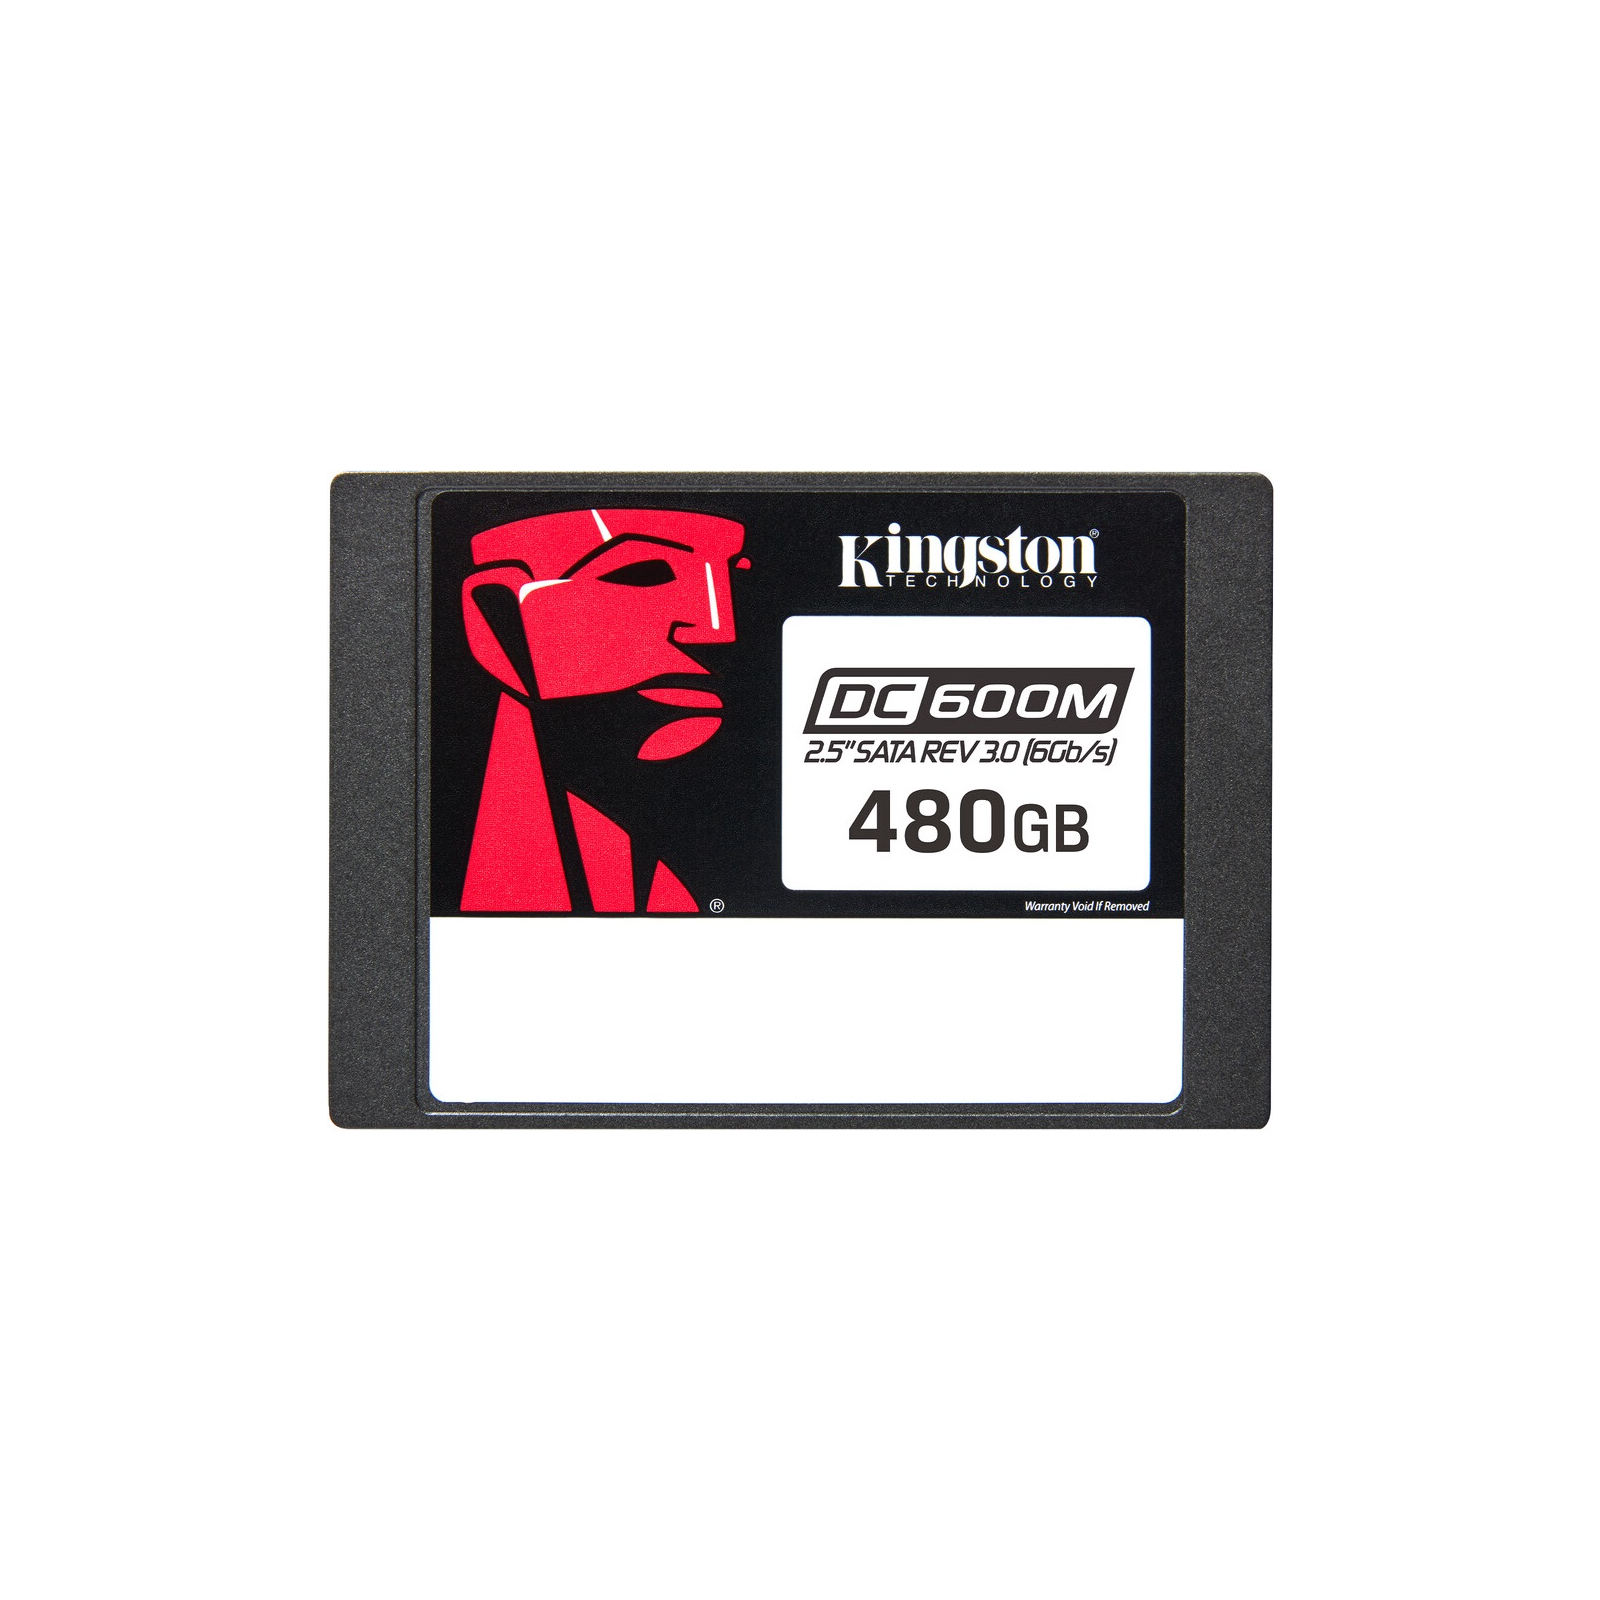 Накопичувач SSD 2.5" 480GB Kingston (SEDC600M/480G)